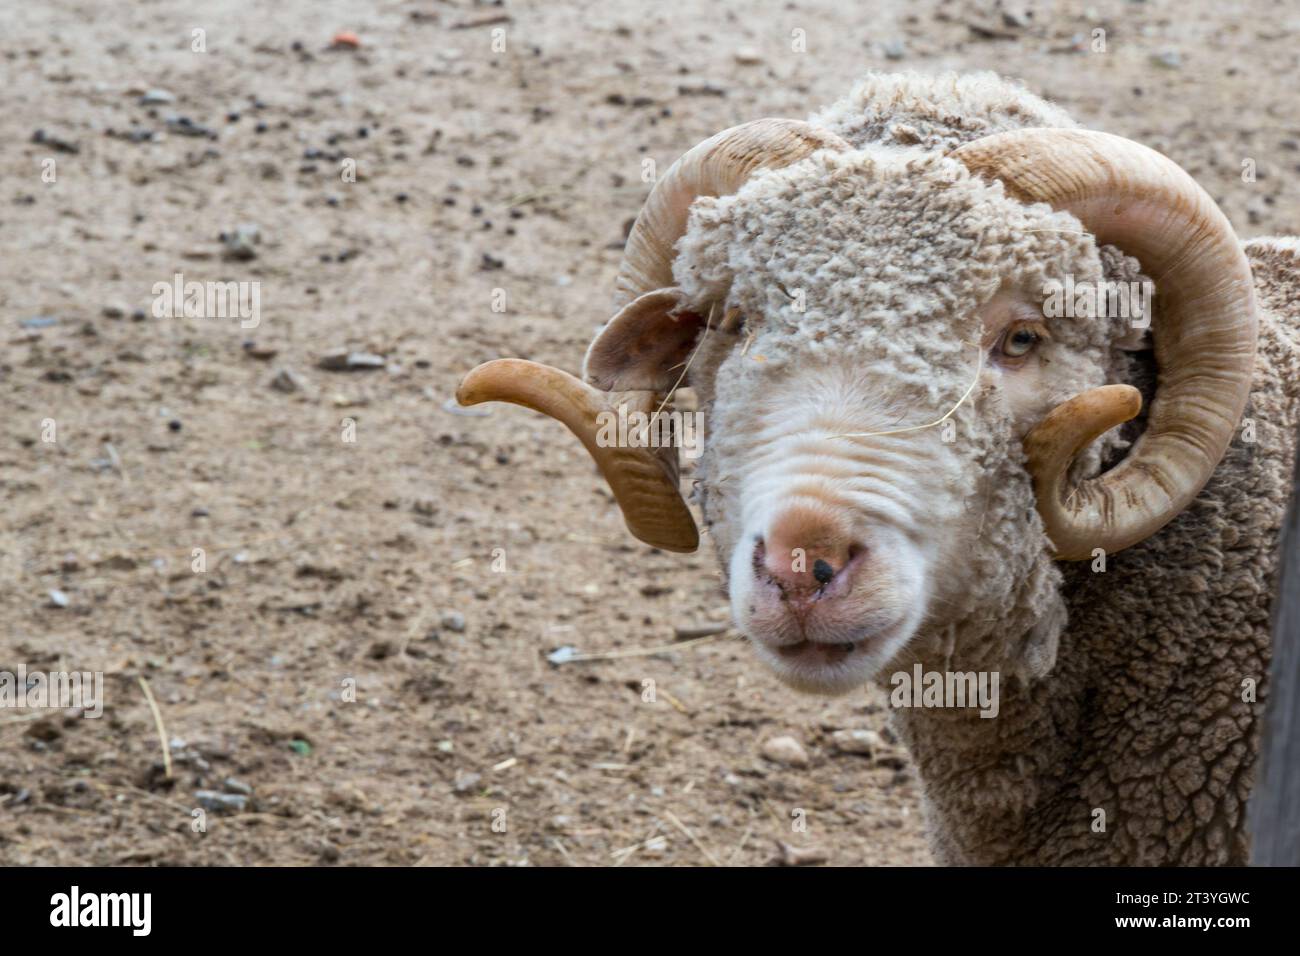 Primo piano delle pecore merino che guardano la macchina fotografica. Rascafria, Spagna Foto Stock